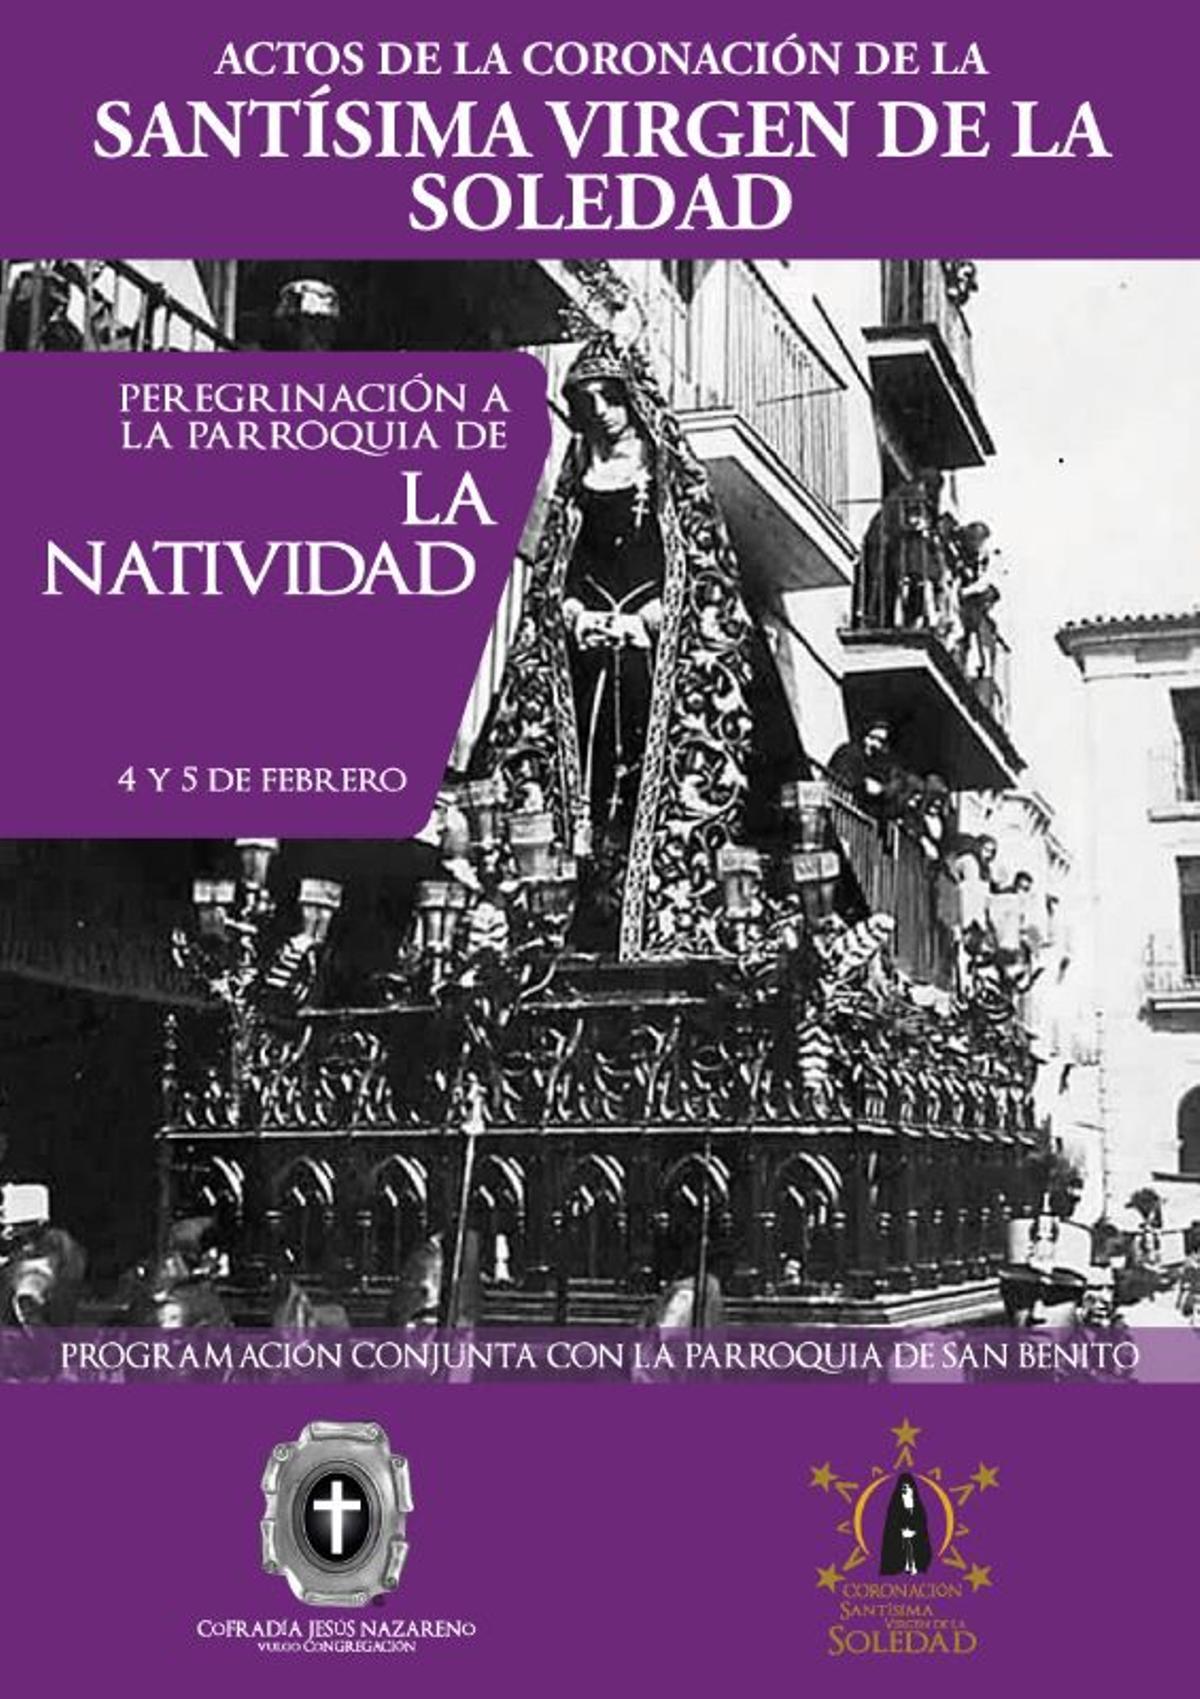 Cartel anunciador de la peregrinación de La Soledad a La Natividad.